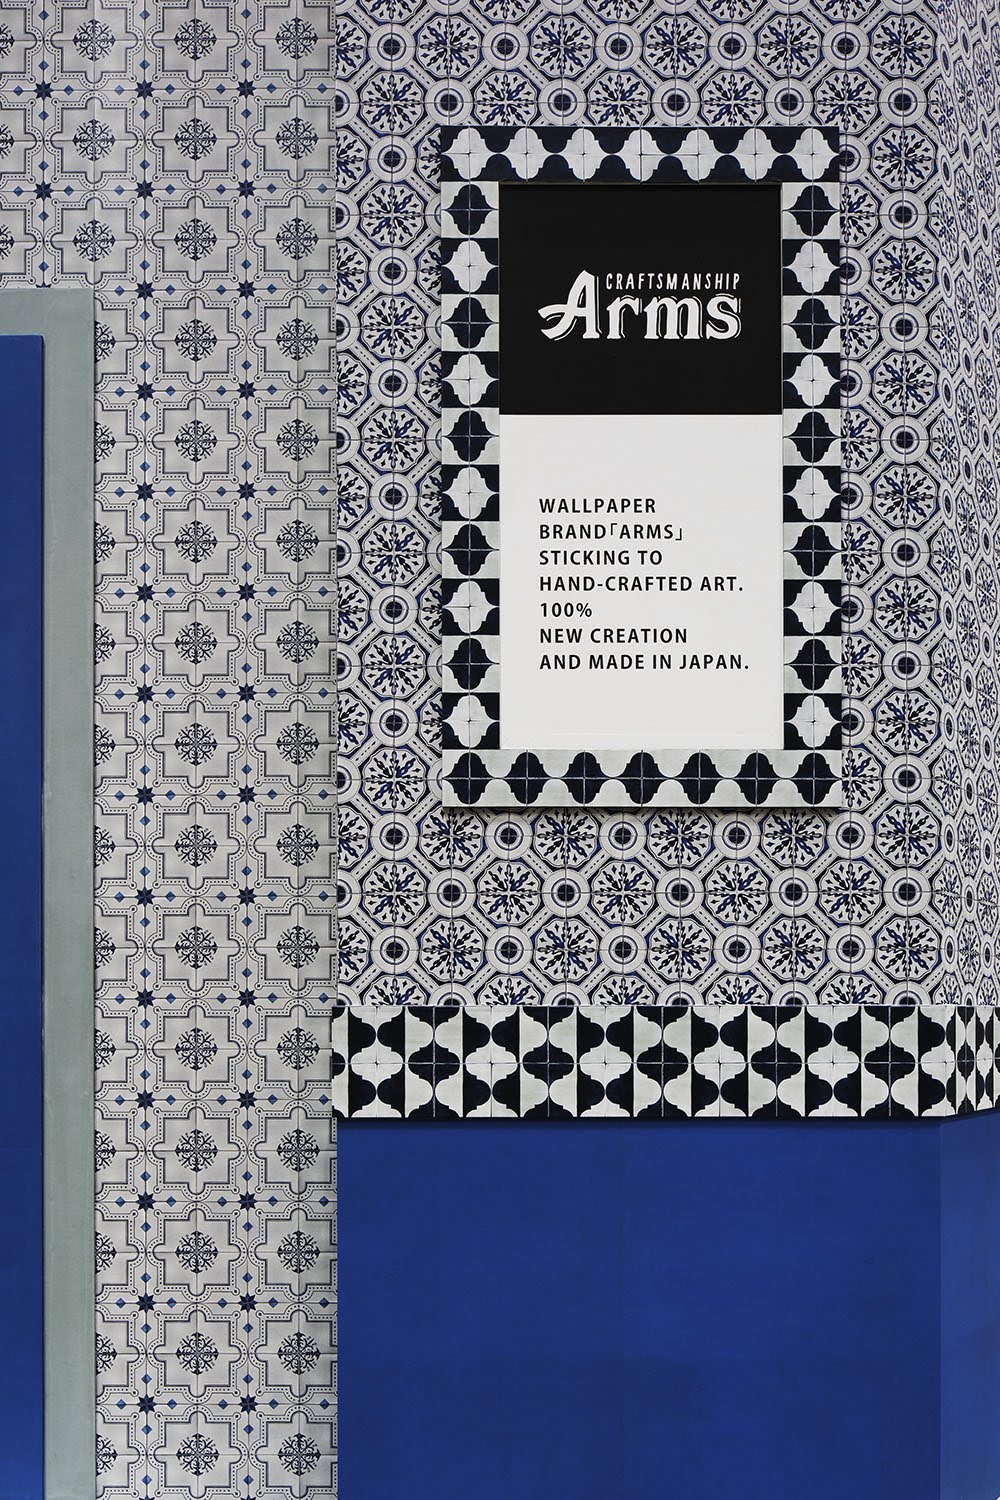 アズレージョ柄壁紙でアートな空間を演出 1 2 壁紙と素材の通販サイト Arms アームス ブログ